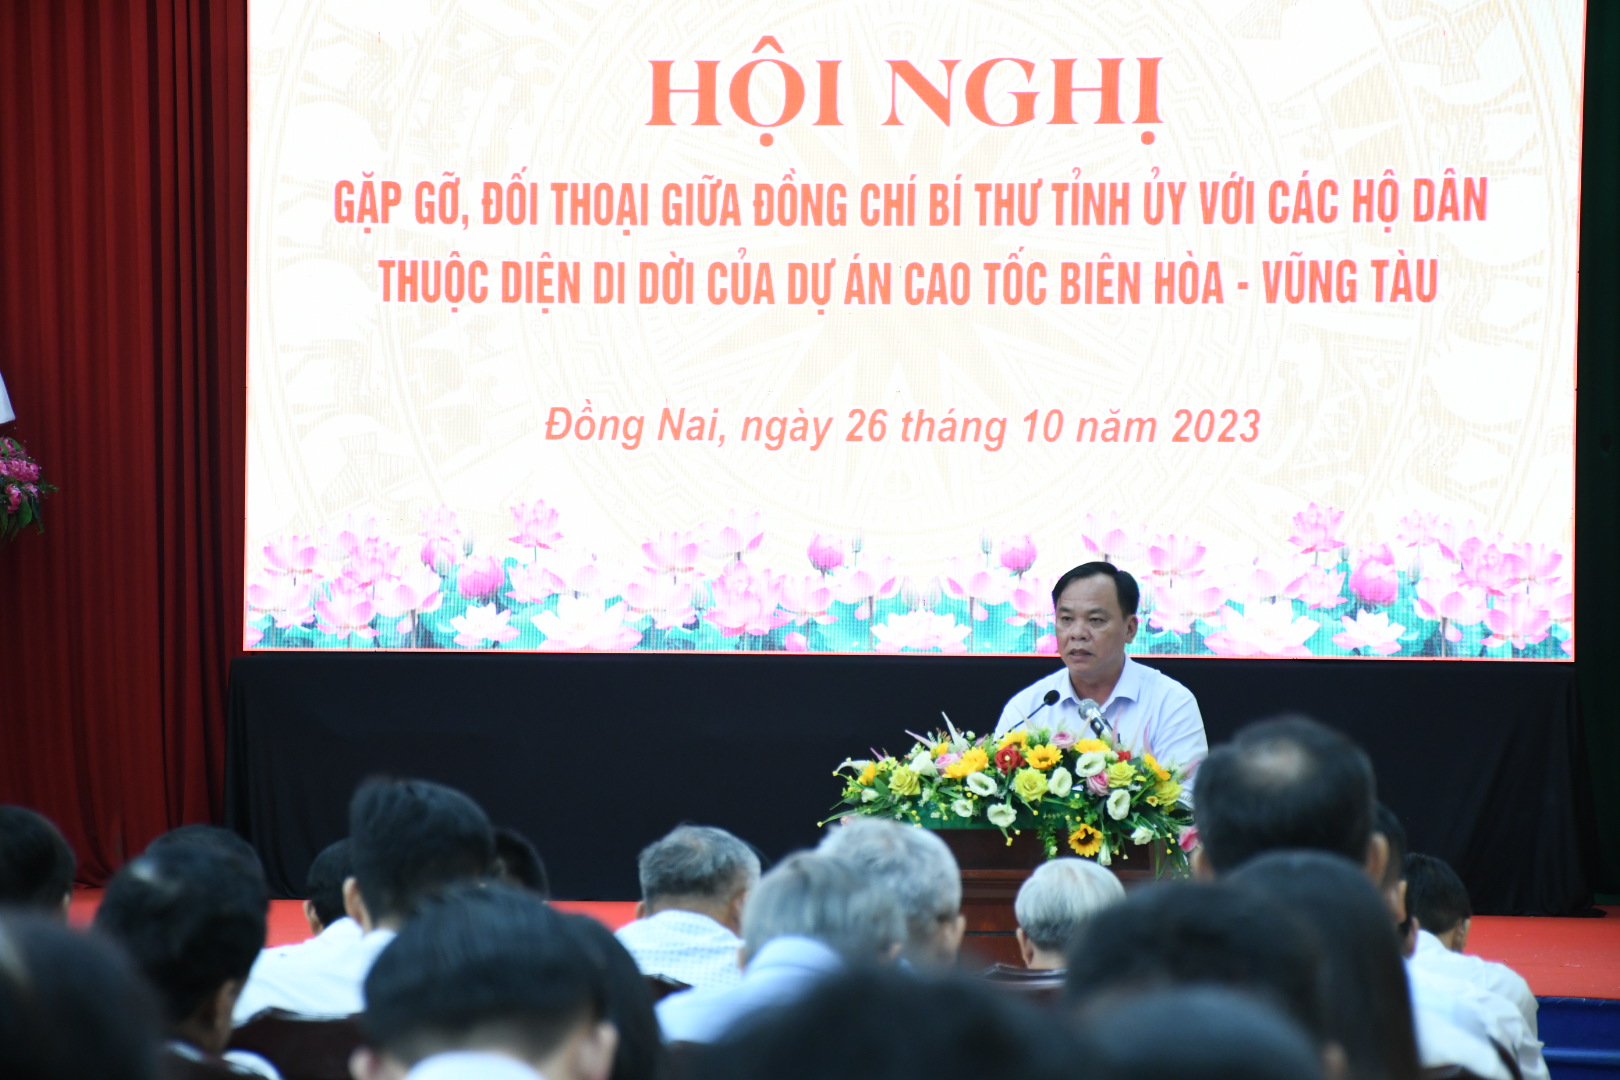 Nội dung đối thoại giữa lãnh đạo Đồng Nai với người dân về cao tốc Biên Hòa - Vũng Tàu - Ảnh 2.